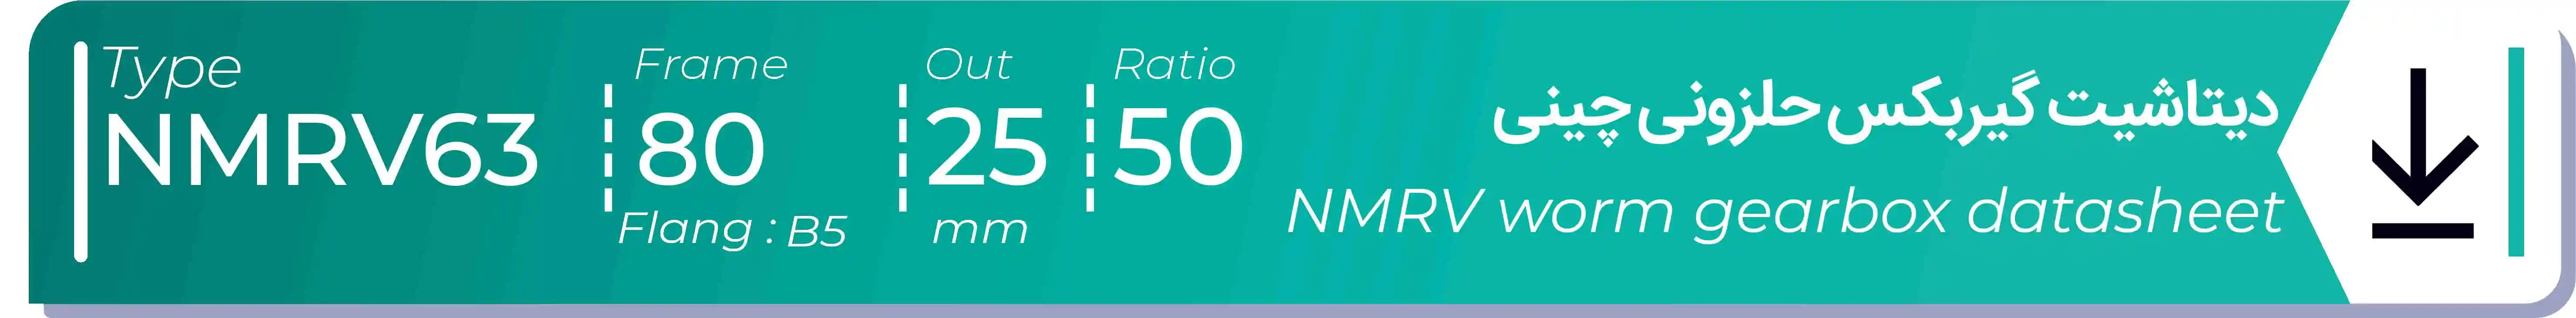  دیتاشیت و مشخصات فنی گیربکس حلزونی چینی   NMRV63  -  با خروجی 25- میلی متر و نسبت50 و فریم 80